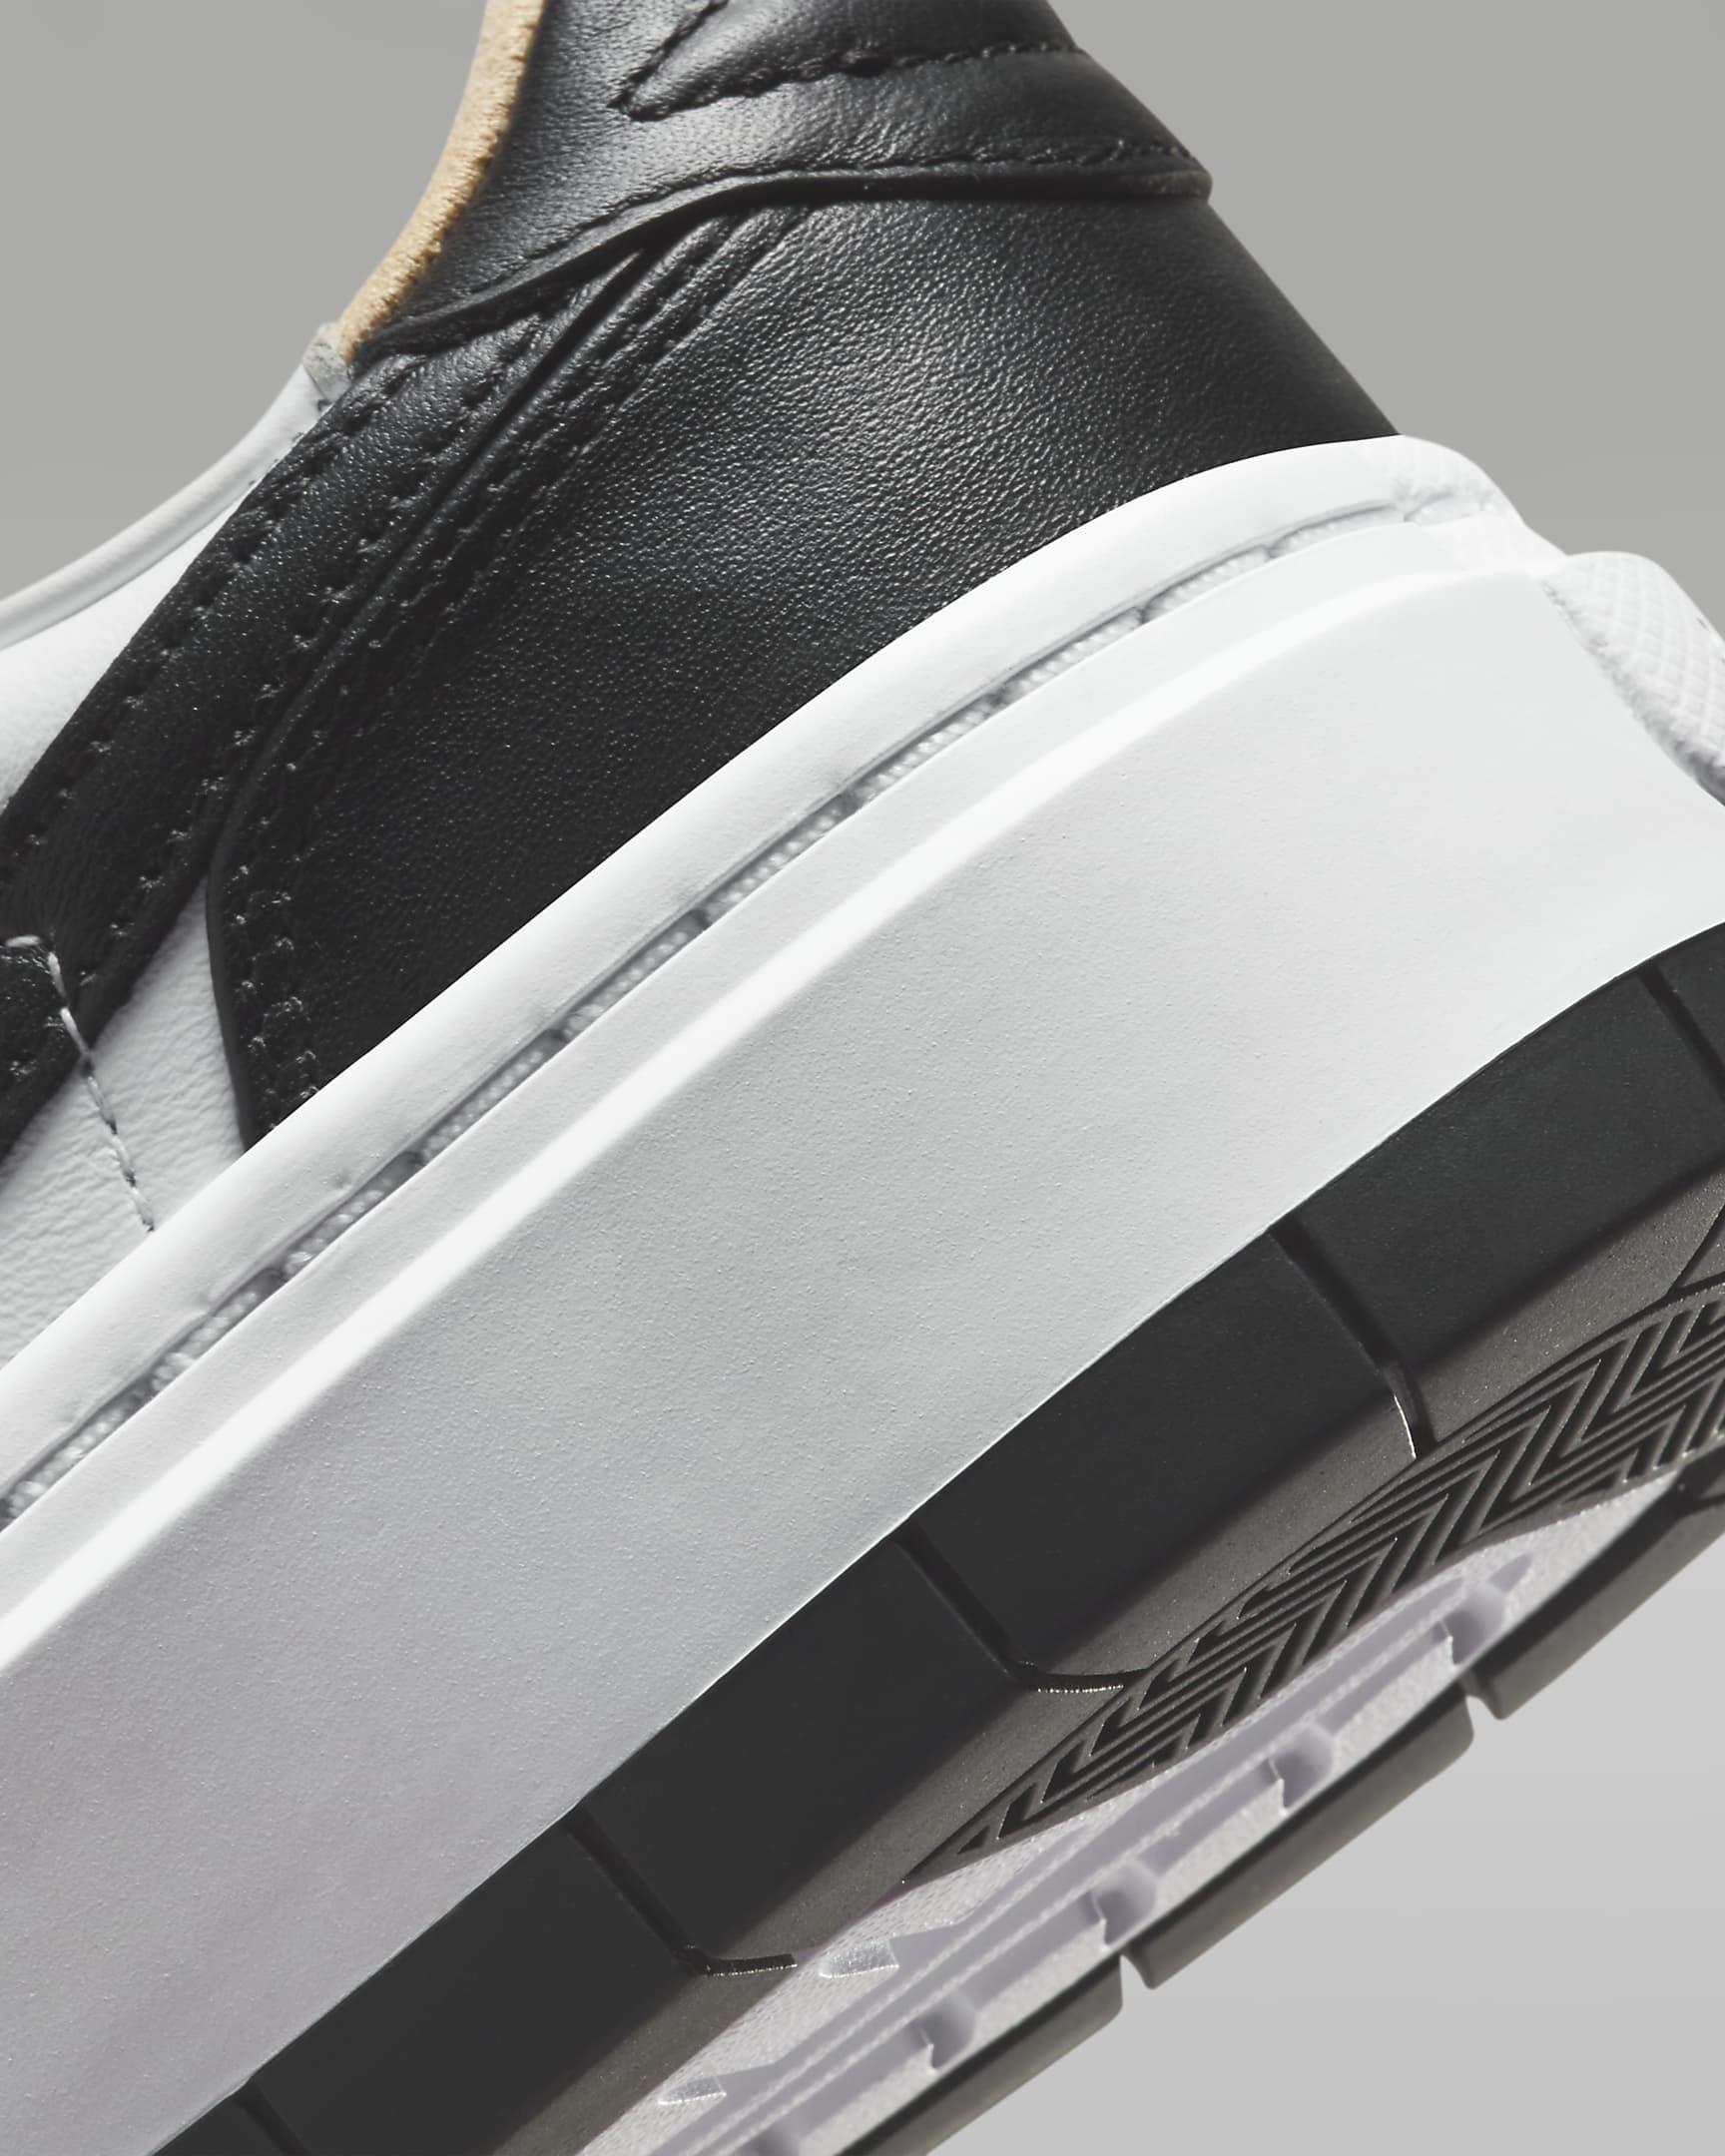 Chaussure Air Jordan 1 Elevate Low pour Femme - Blanc/Blanc/Noir